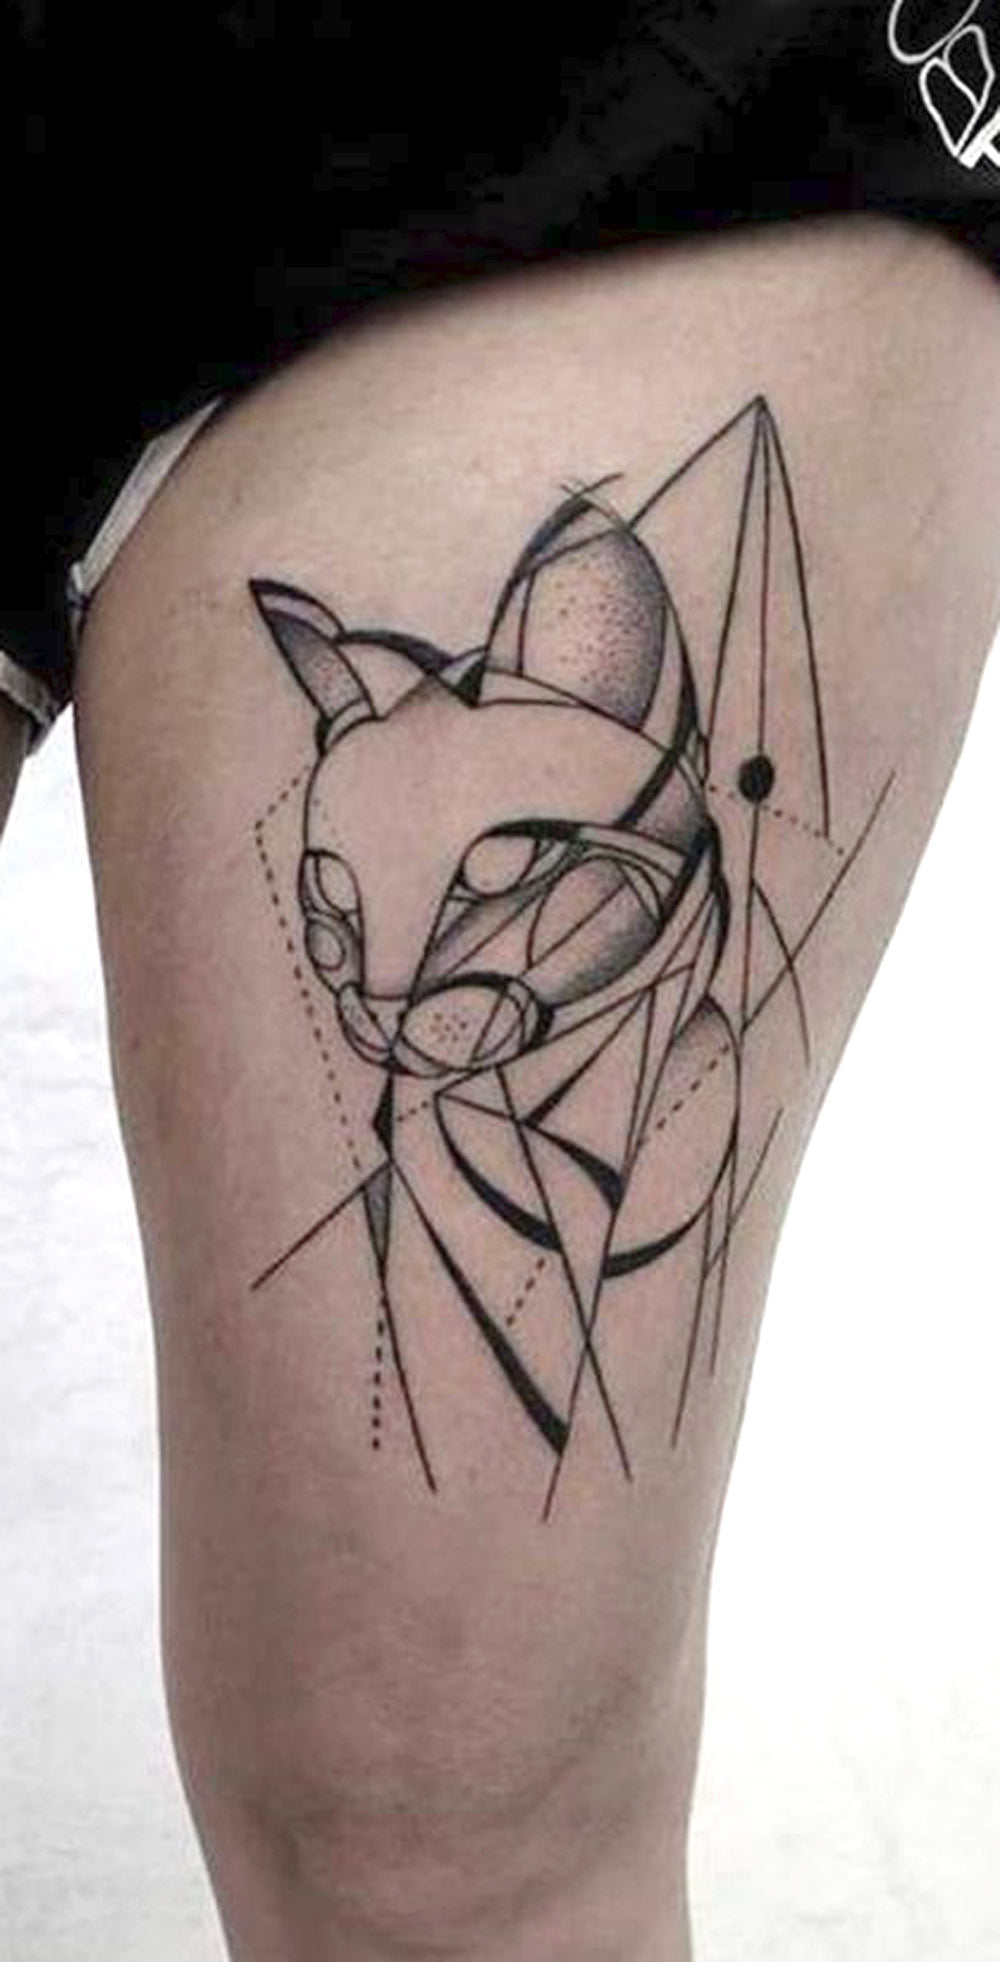 Cool Badass Geometric Cat Thigh Tattoo Ideas for Women -  geometrische Katze Oberschenkel Tattoo Ideen für Frauen - www.MyBodiArt.com 